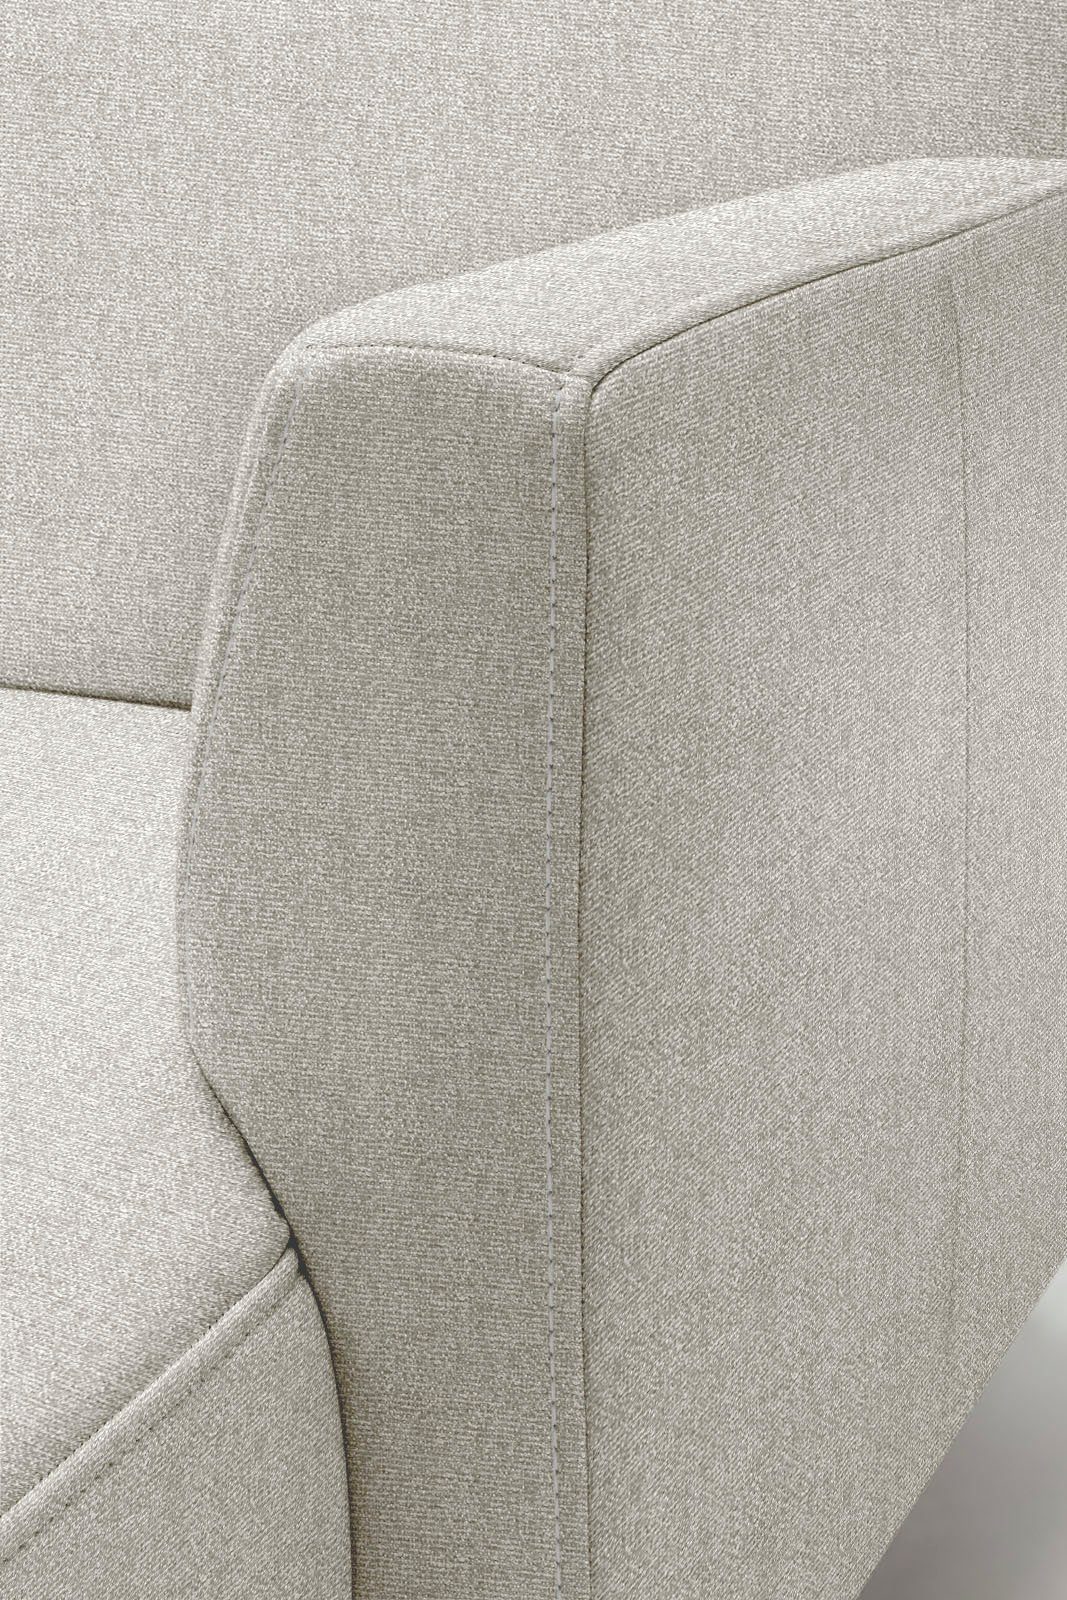 cm Ecksofa in hs.446, hülsta sofa schwereloser Breite minimalistischer, Optik, 317